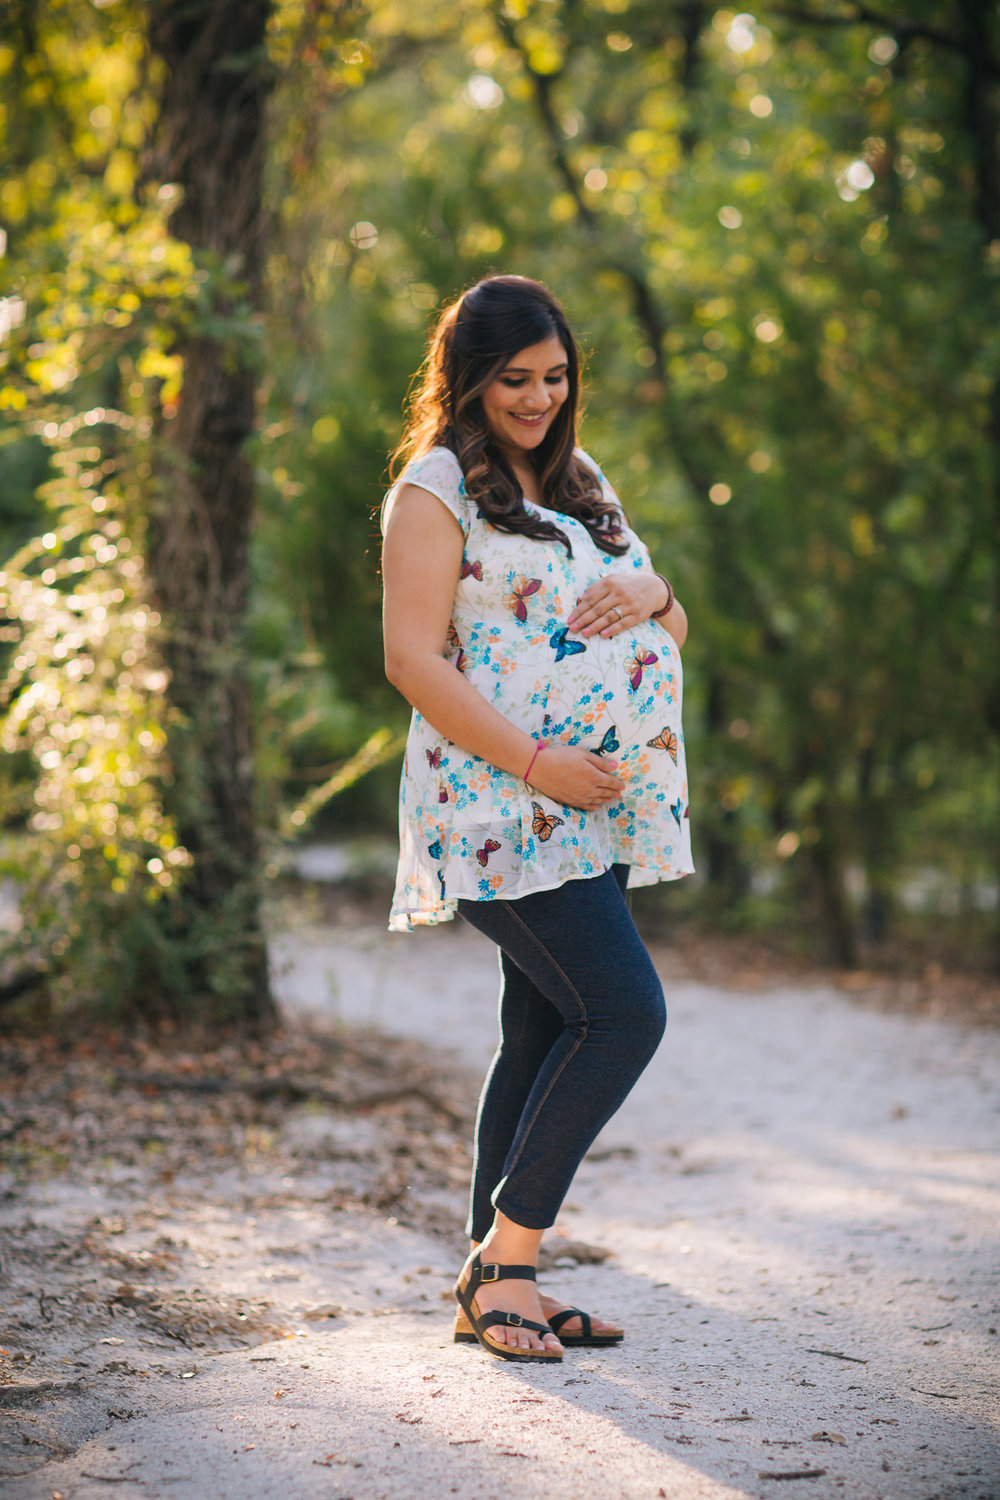 elizalde photography - maternity session - maternity photography - denton photographer -.jpg